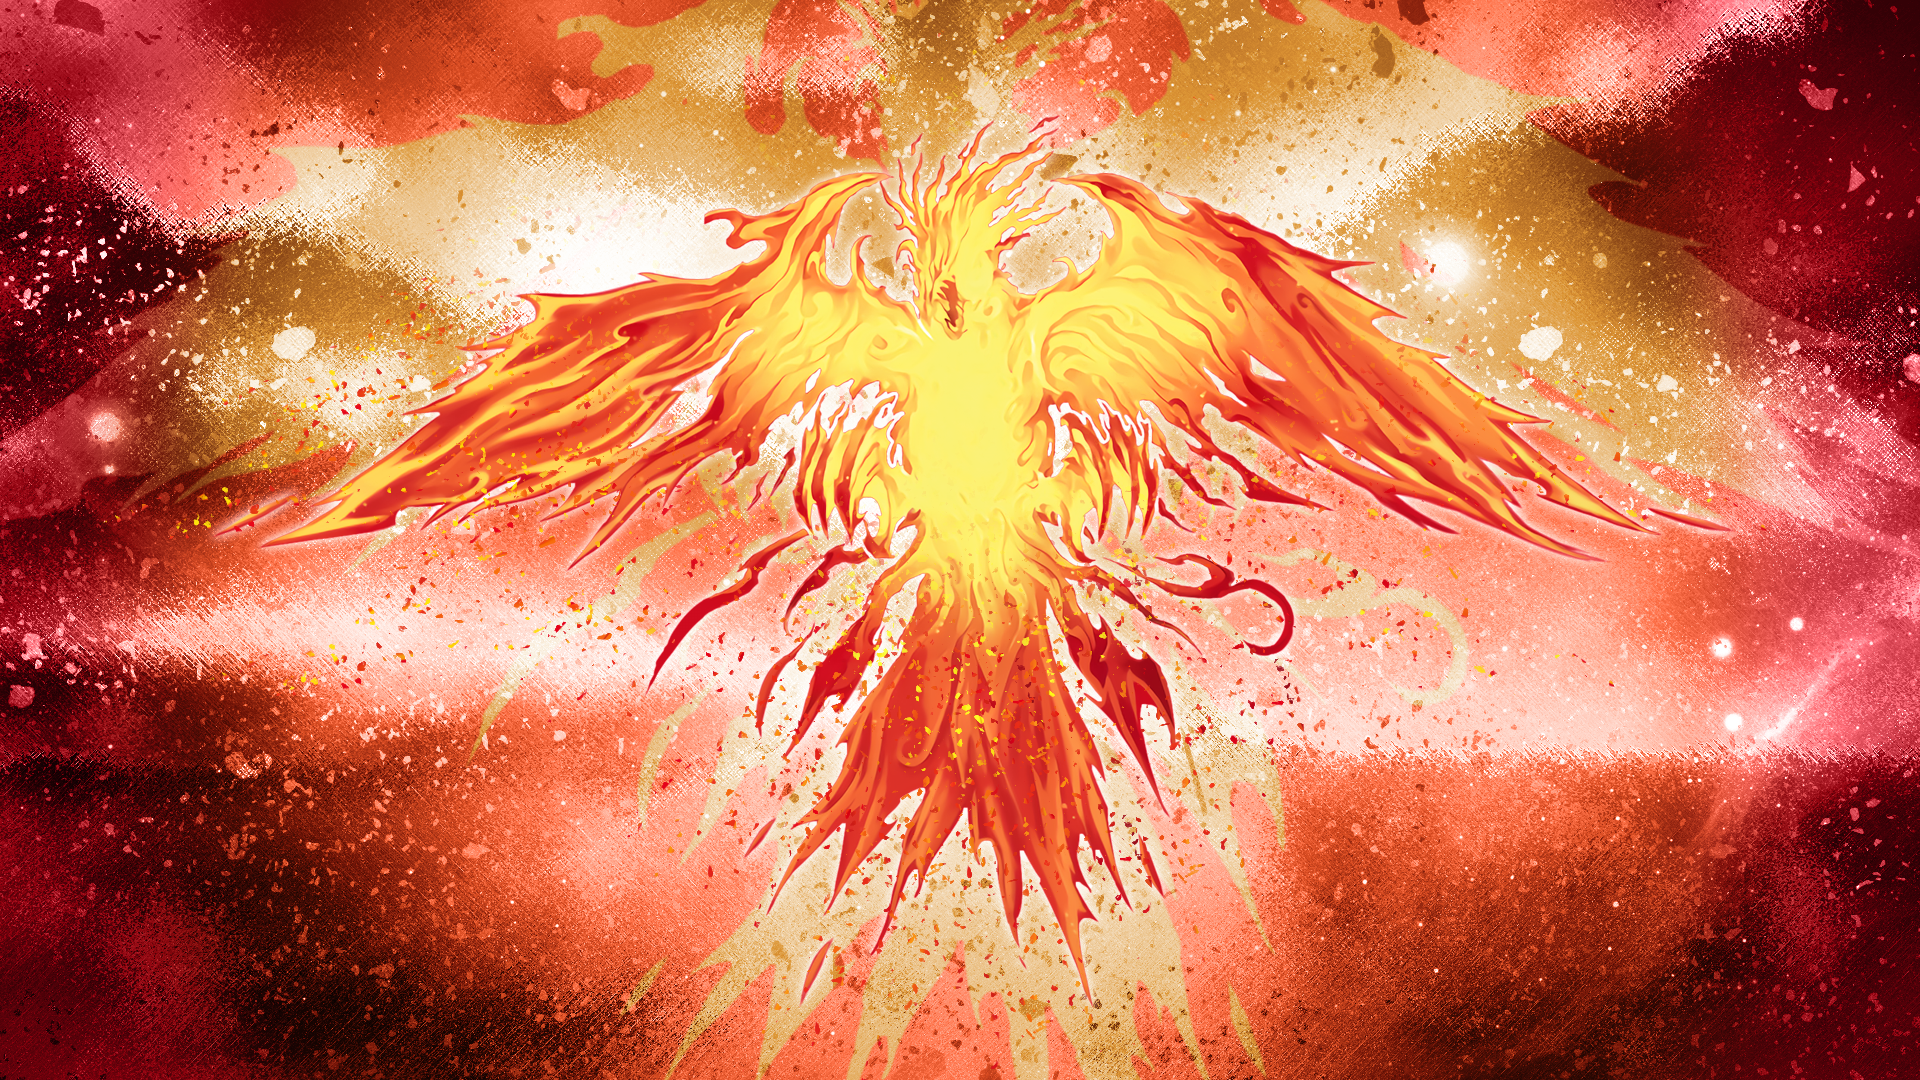 Winged Dragon Of Ra Immortal Phoenix Art - 1920x1080 Wallpaper 